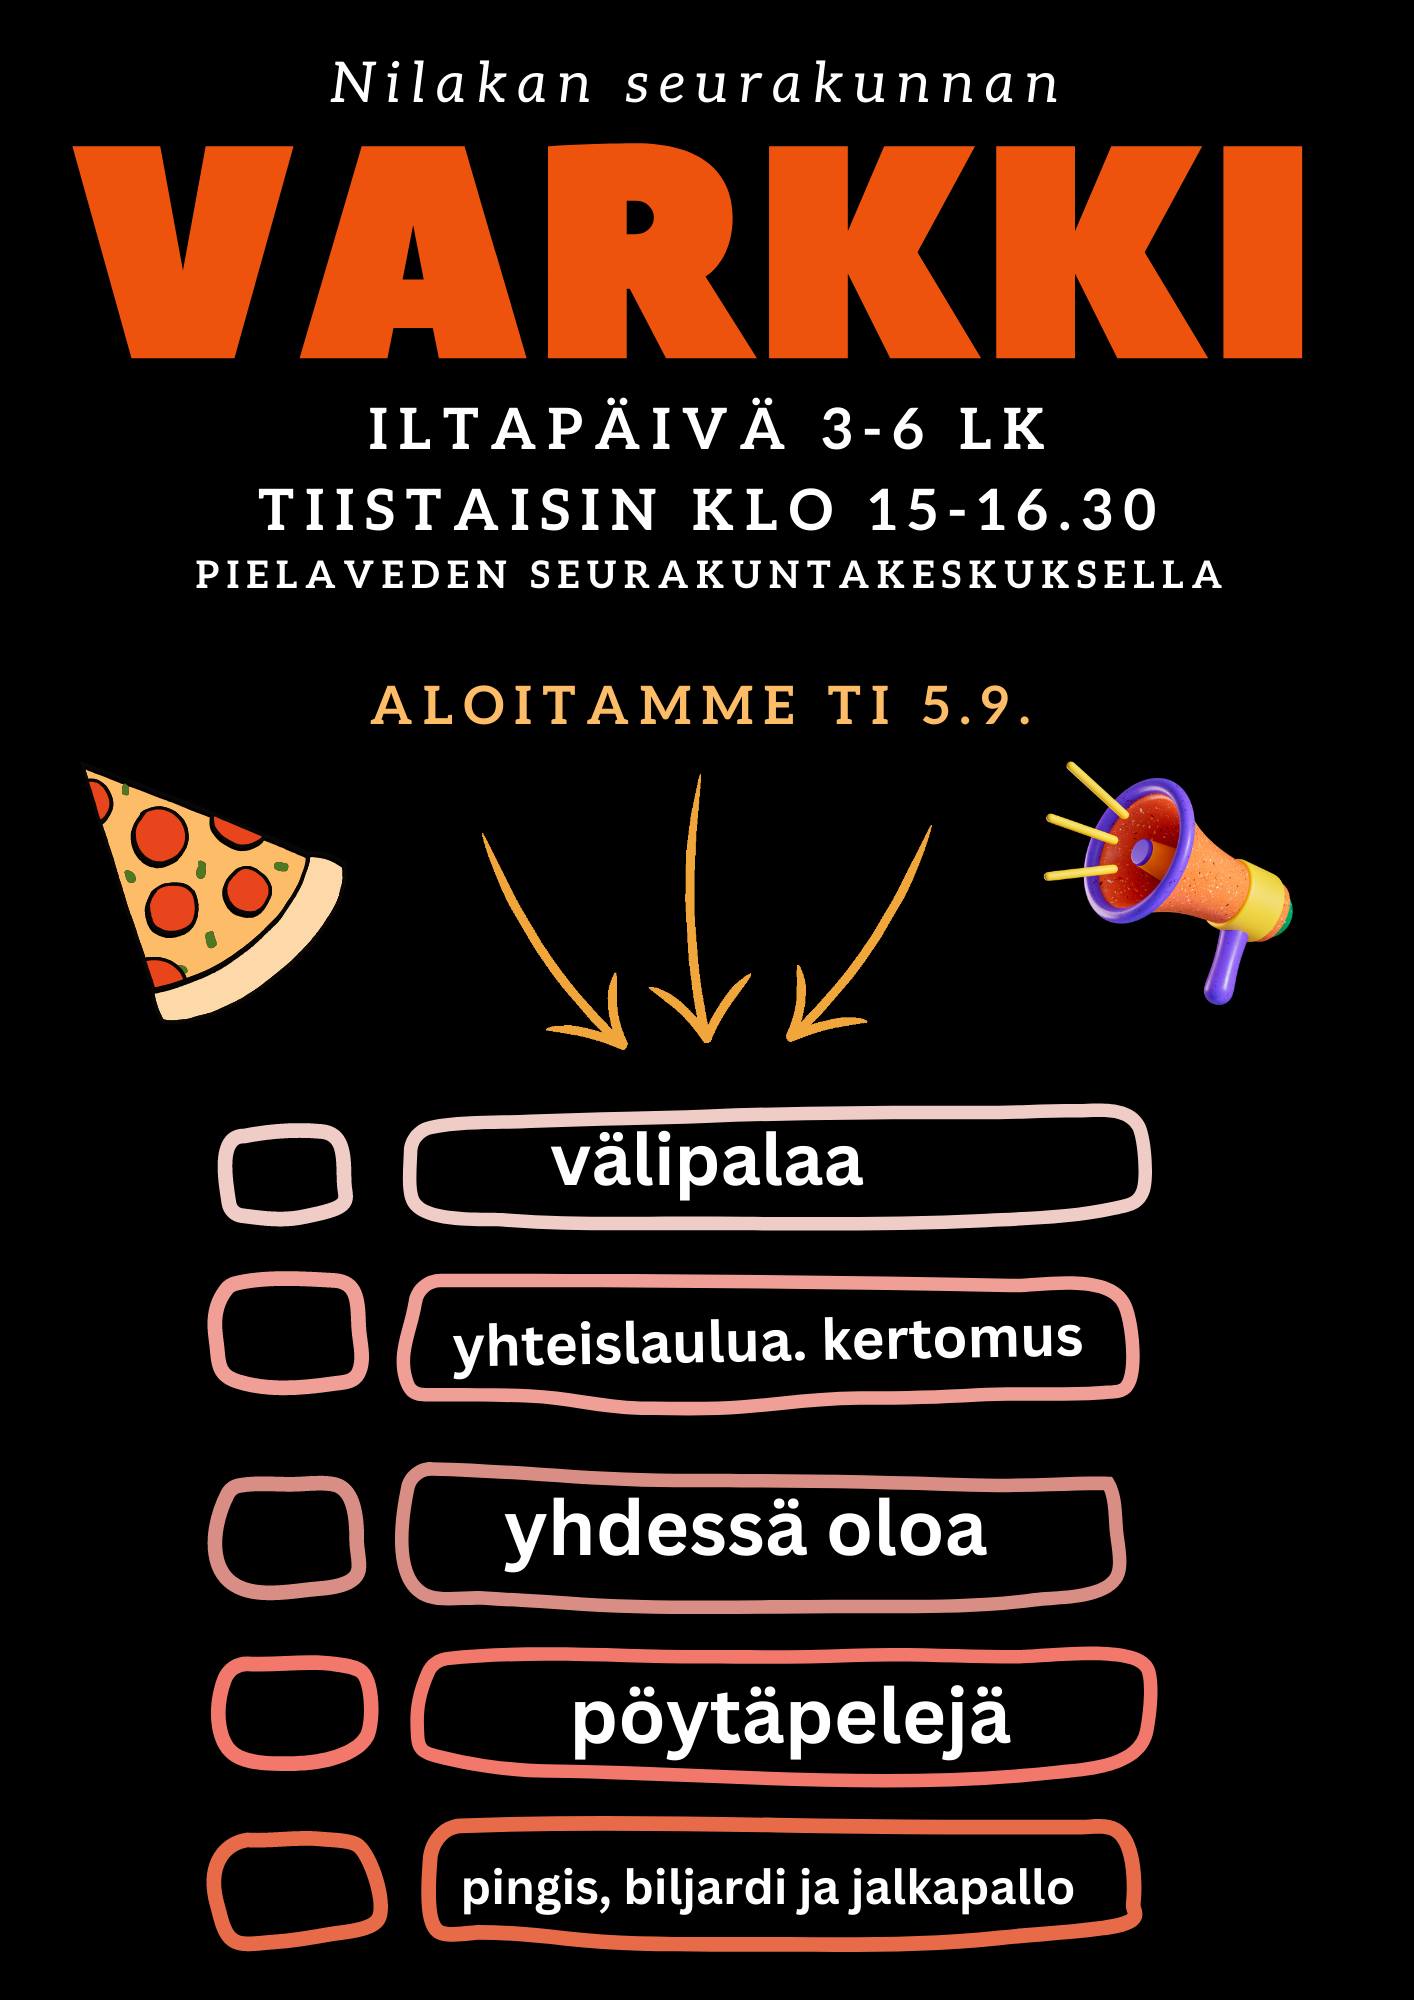 3-6 lk Varkki-iltapäivä kokoontuu tiistaisin srk:n nuortentiloissa klo 15-16.30.